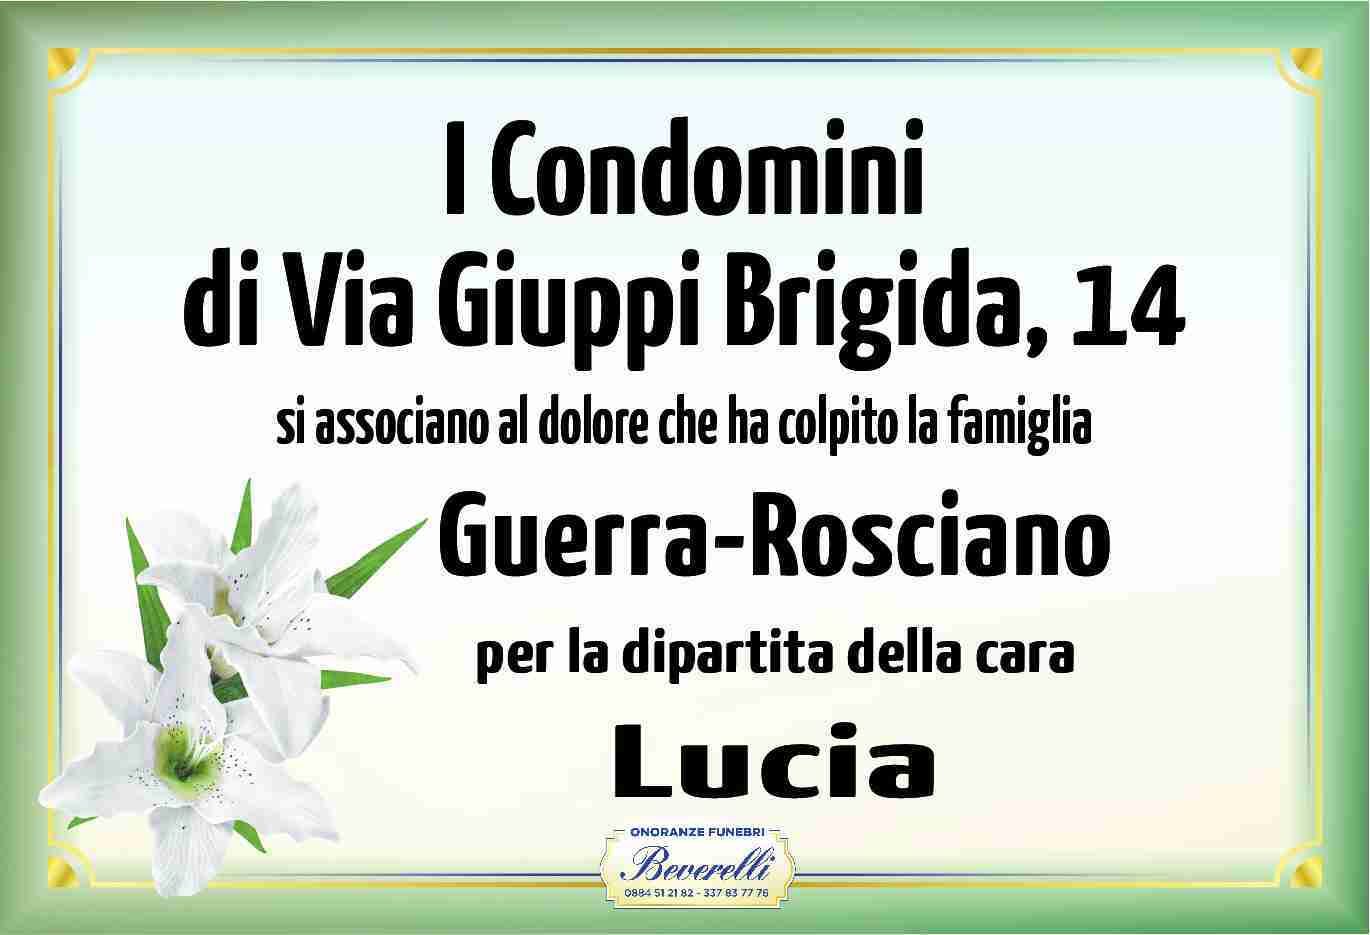 Lucia Rosciano